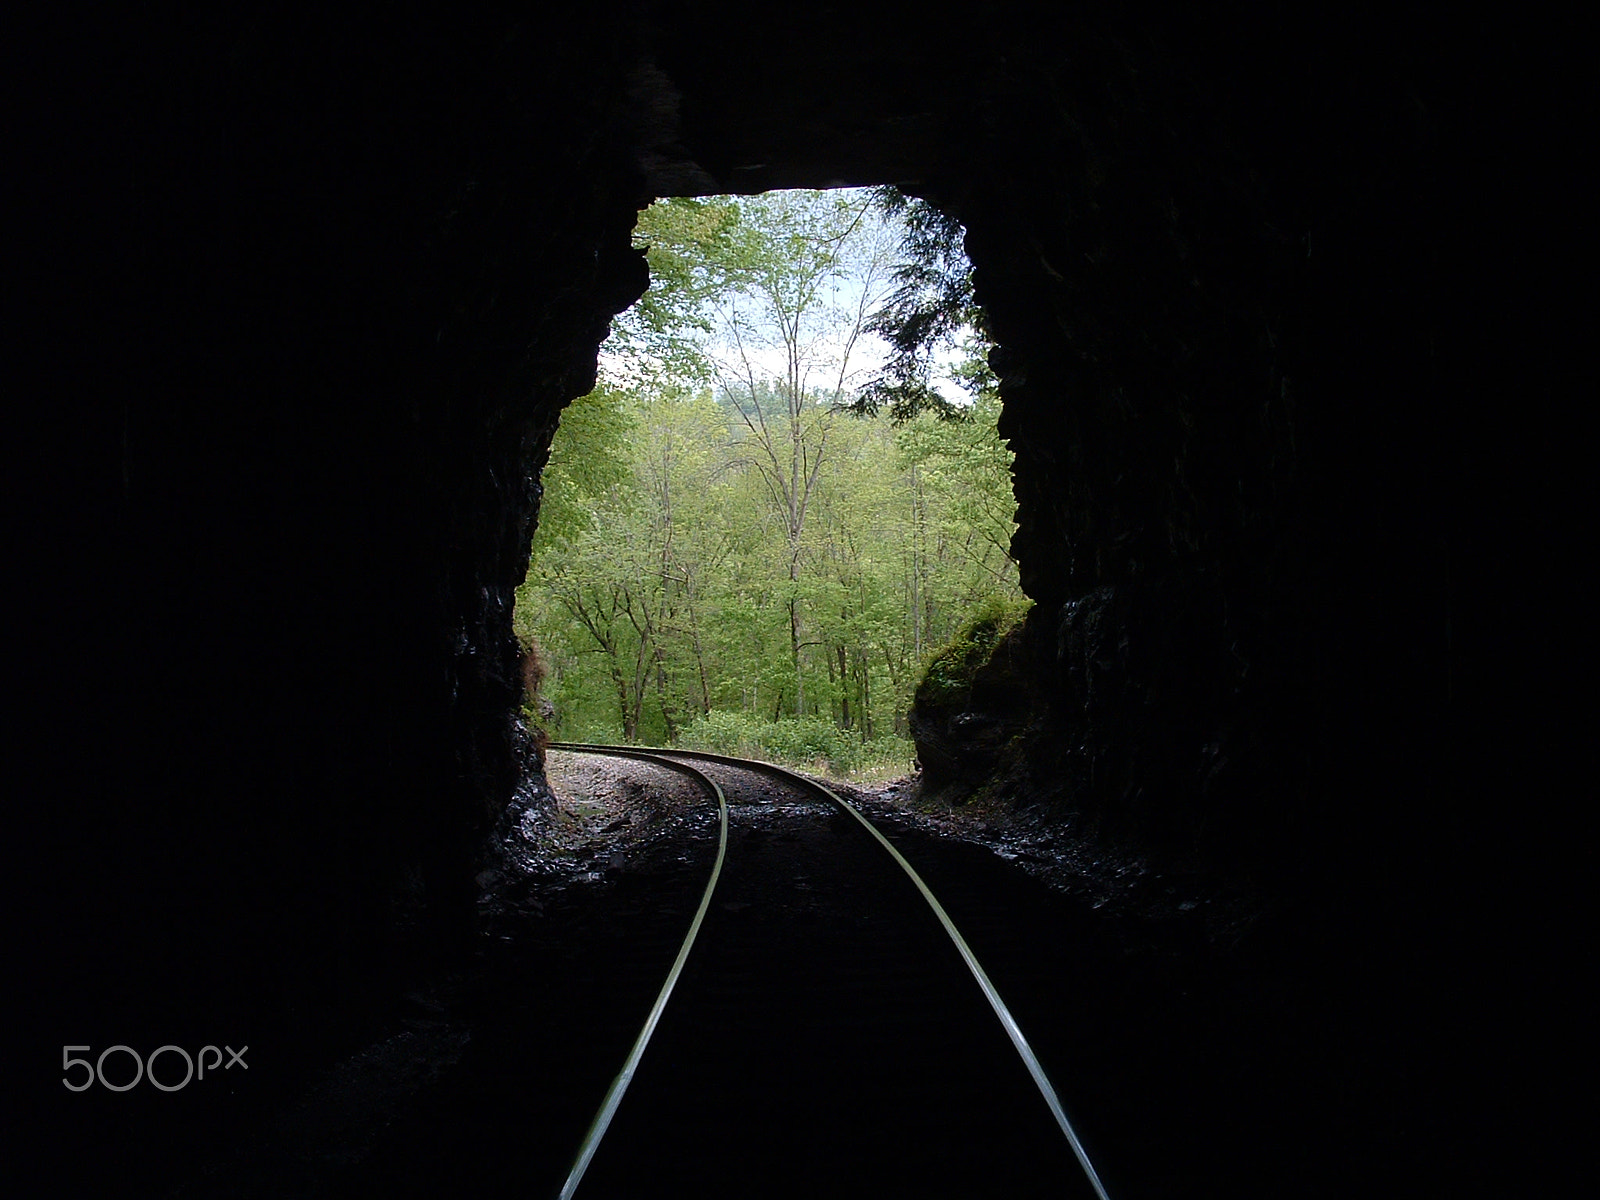 Fujifilm FinePix 3800 sample photo. Railroad tunnel photography